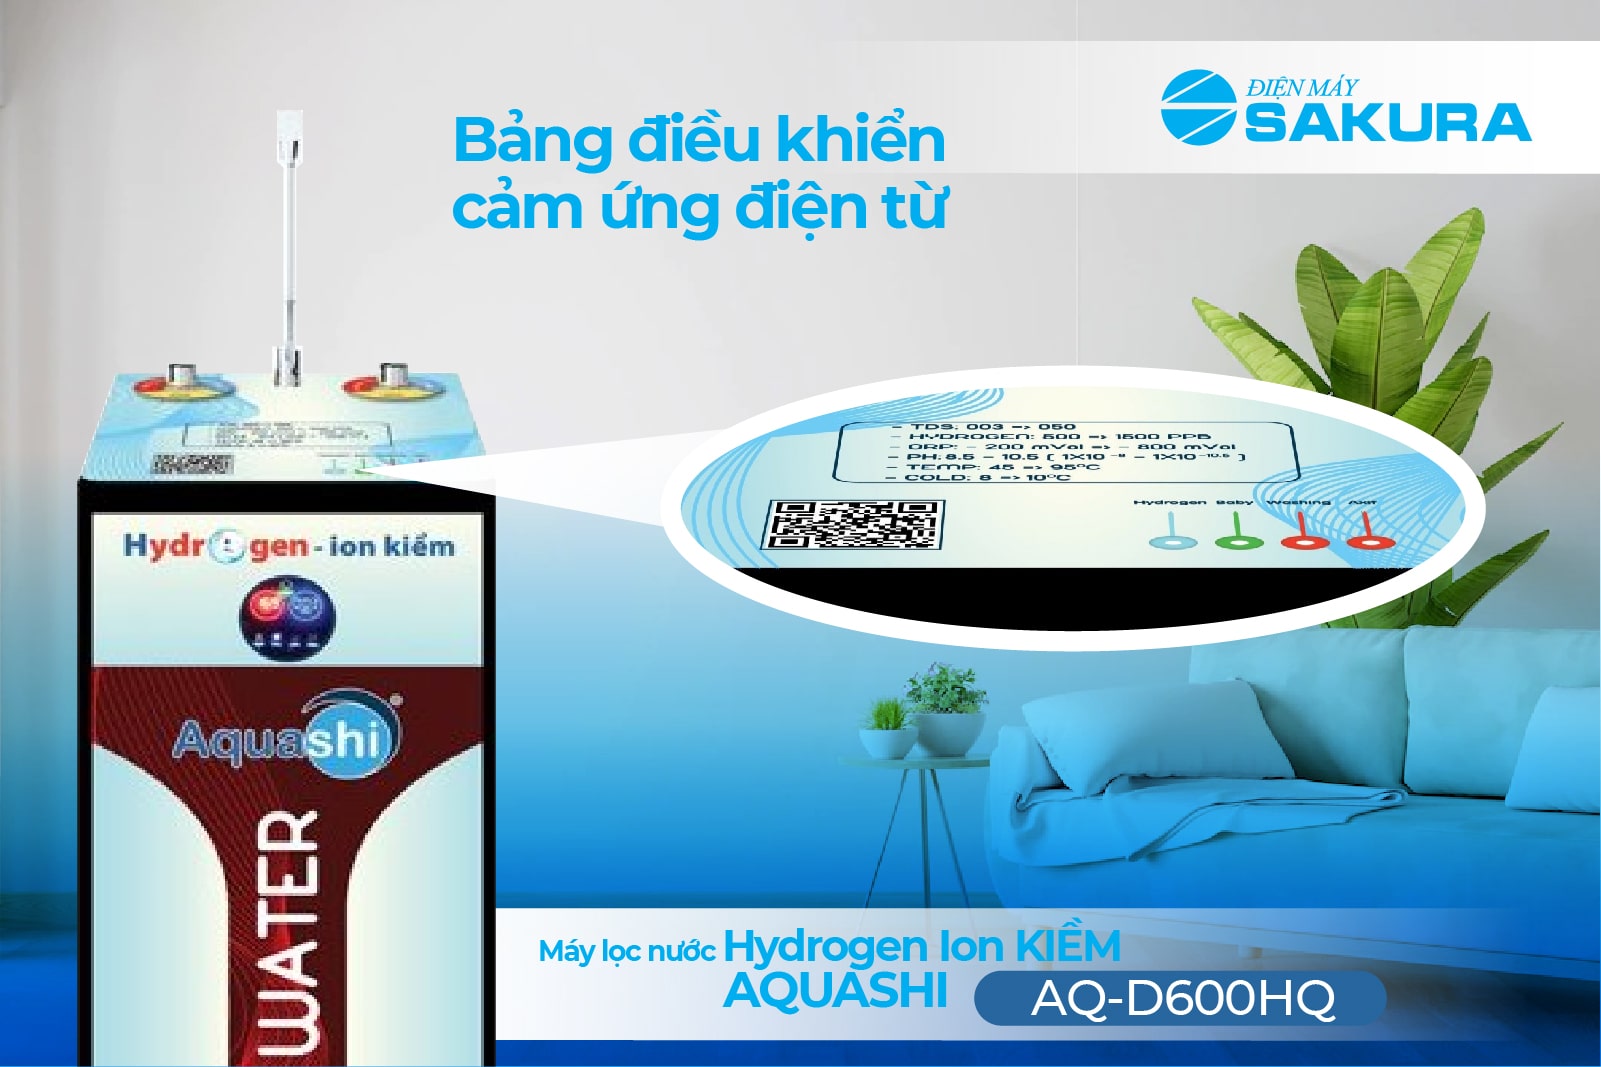 Máy lọc nước Hydrogen Aquashi AQ-D600HQ bảng điều khiển cảm ứng điện từ